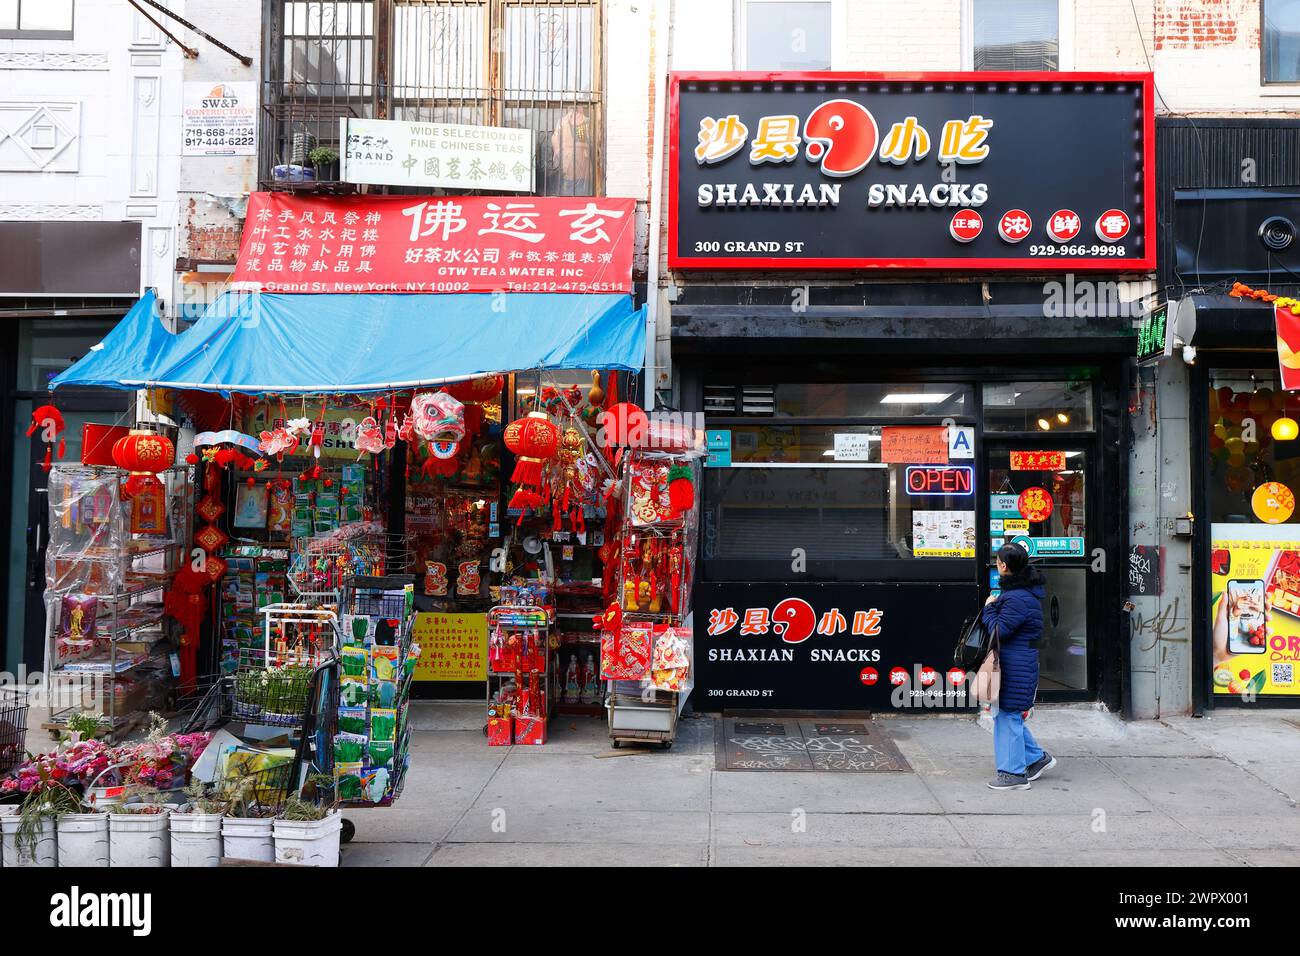 Shaxian Snacks 沙县小吃, 300 Grand St, GTW Tea & Water, New York, New York, NYC Ladenfront eines chinesischen Franchise-Restaurants in Manhattan Chinatown. 紐約 Stockfoto